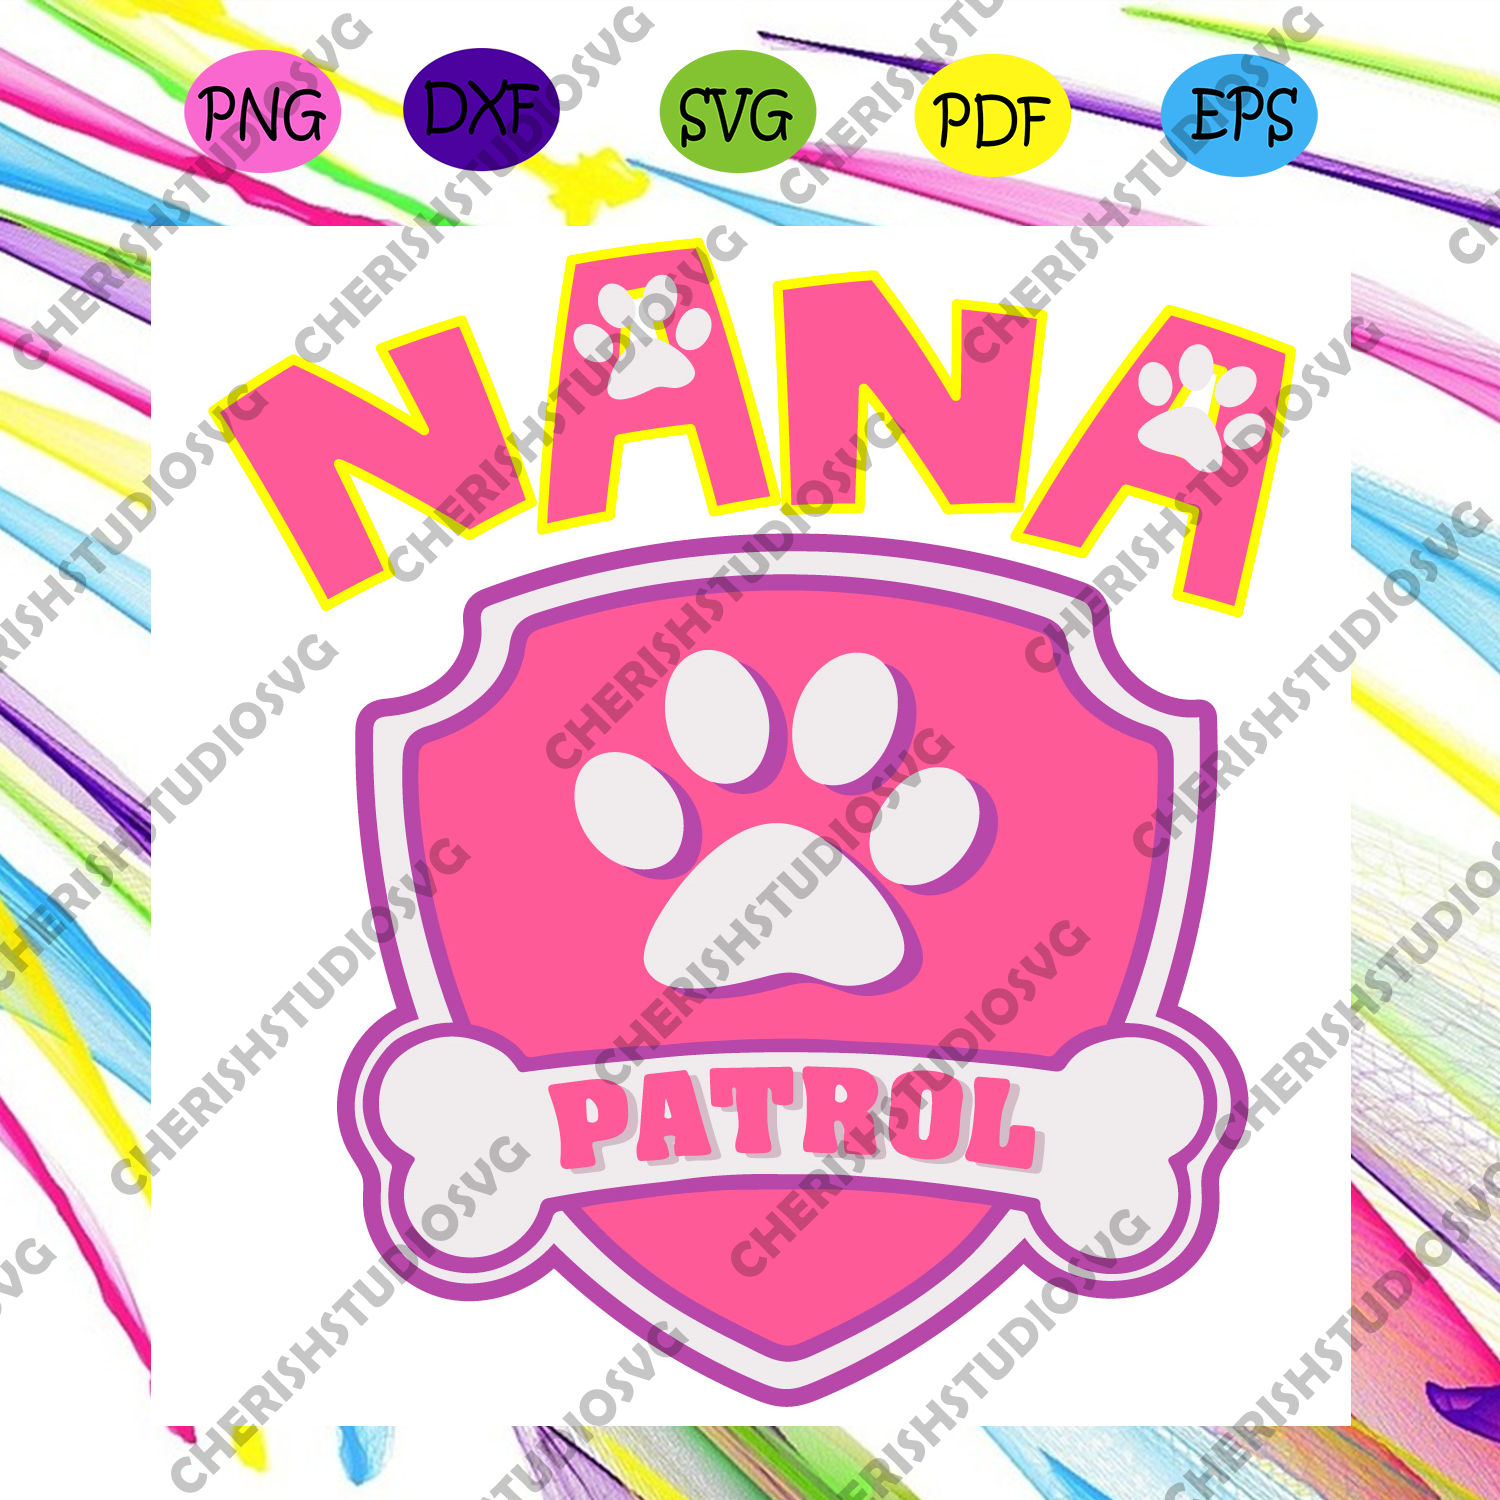 Download Nana Patrol Svg Trending Svg Nana Svg Patrol Svg Dog Foot Svg Nan Cherishsvgstudio